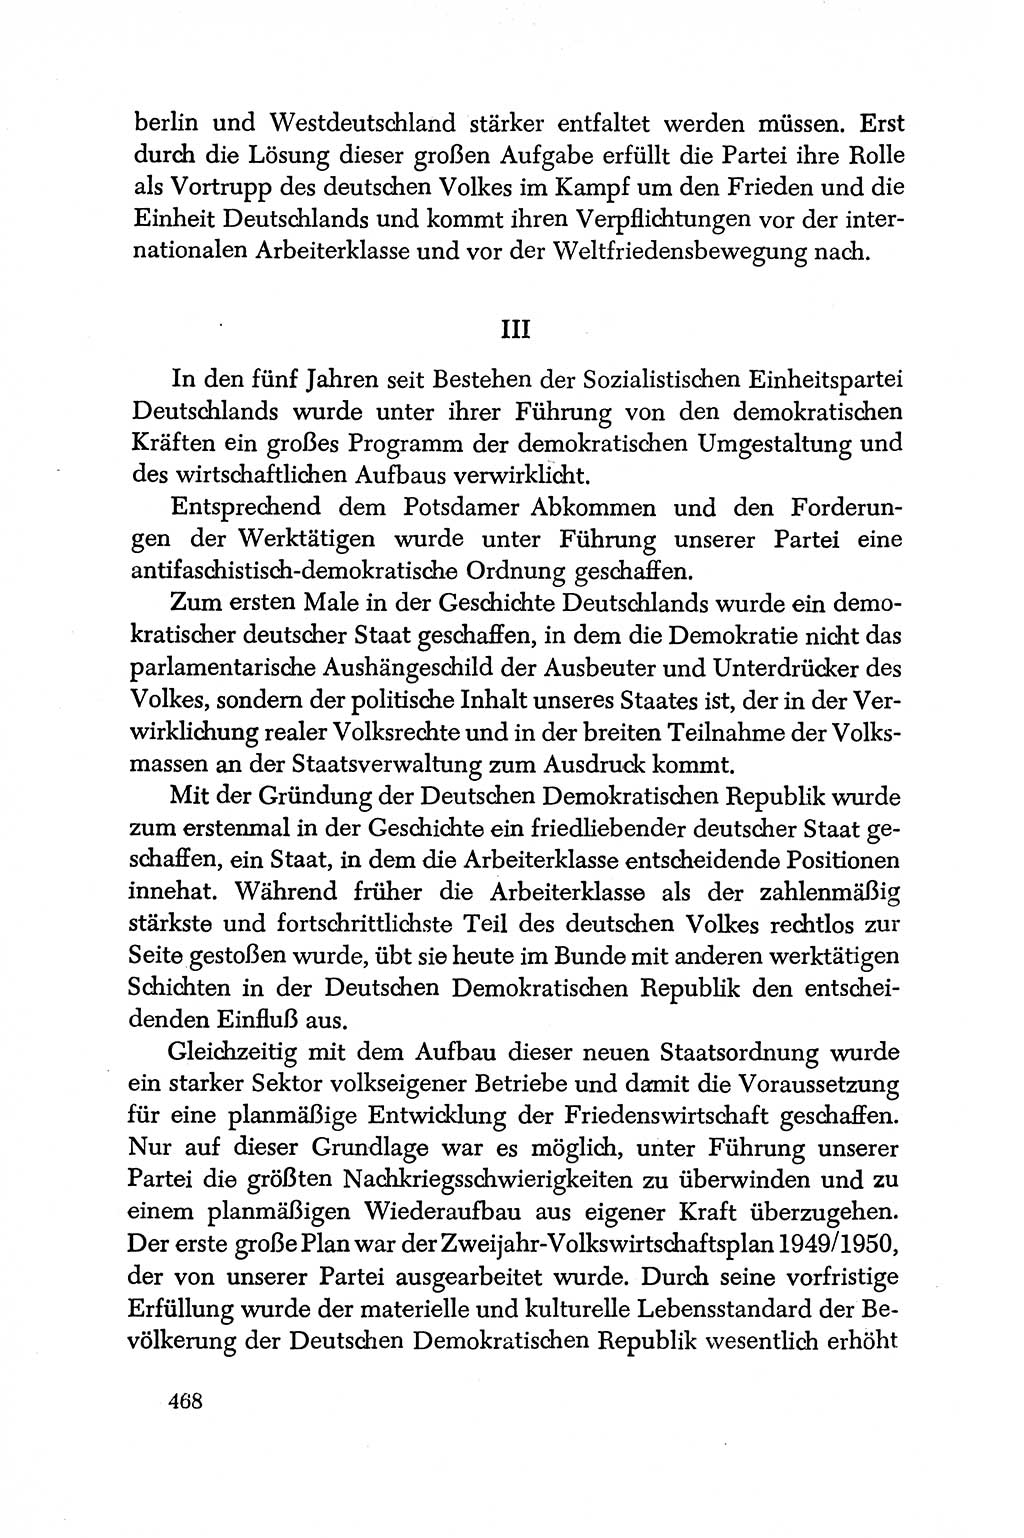 Dokumente der Sozialistischen Einheitspartei Deutschlands (SED) [Deutsche Demokratische Republik (DDR)] 1950-1952, Seite 468 (Dok. SED DDR 1950-1952, S. 468)